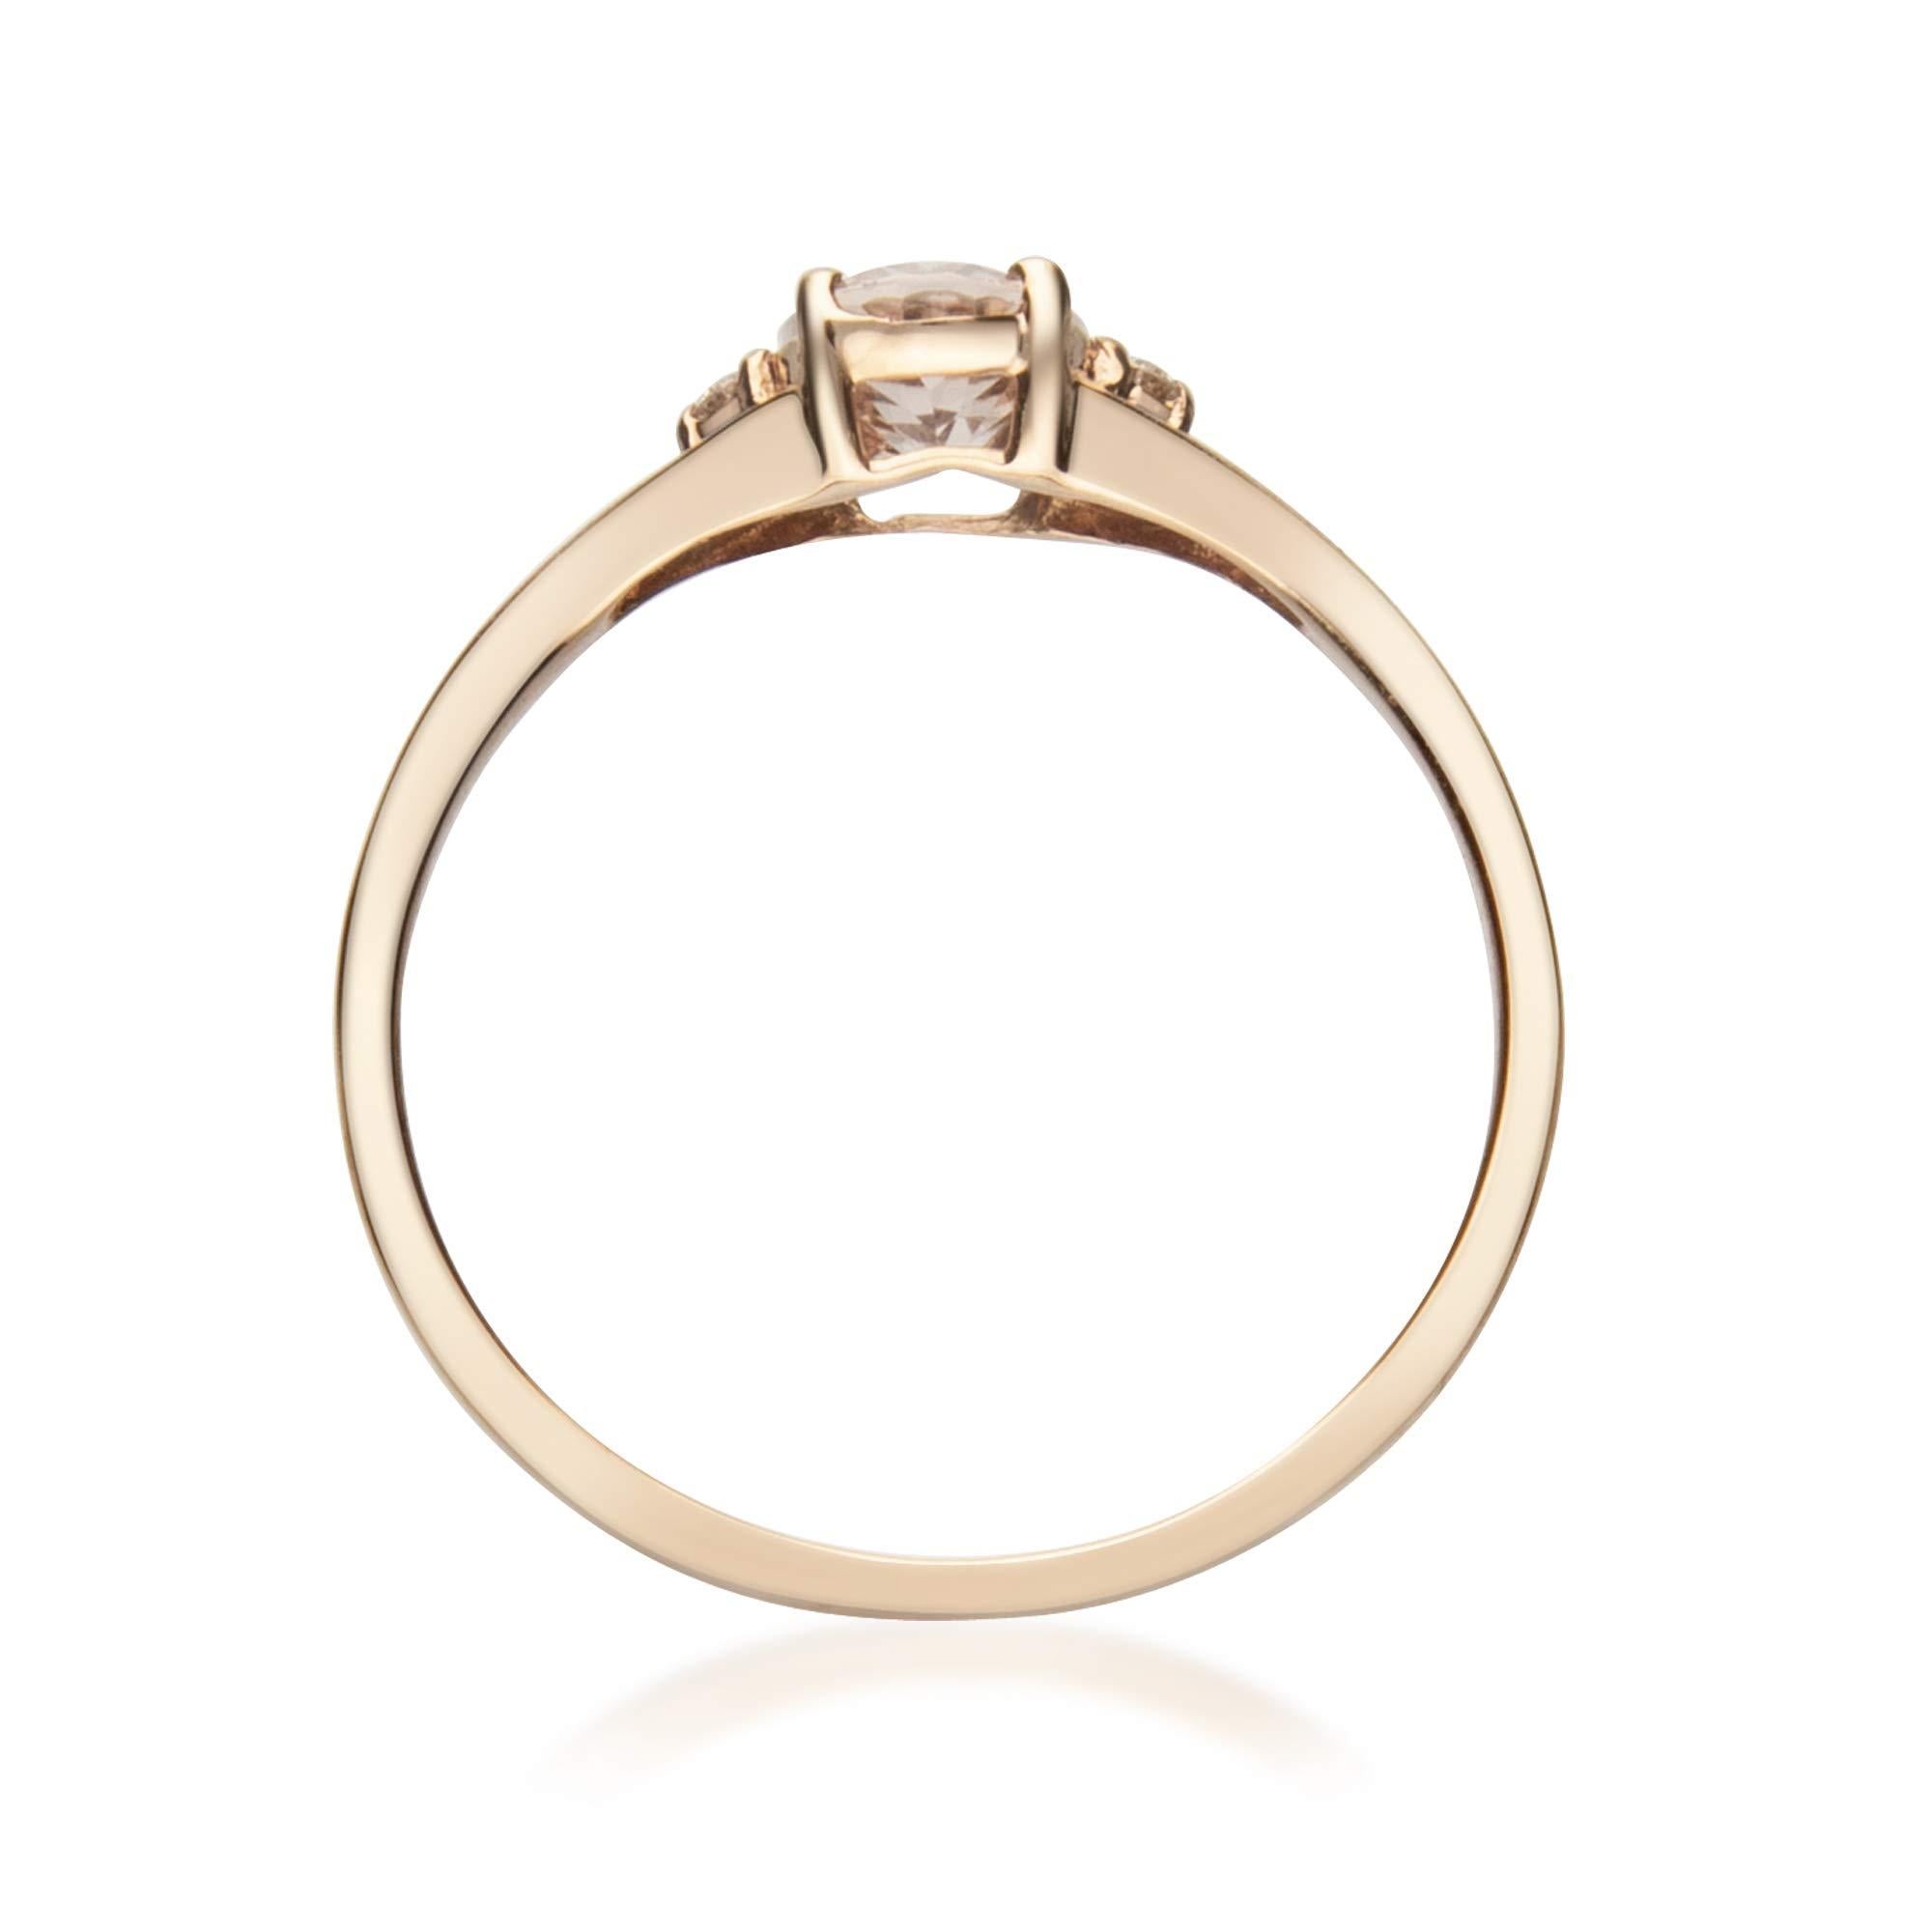 0.75 carat oval diamond ring